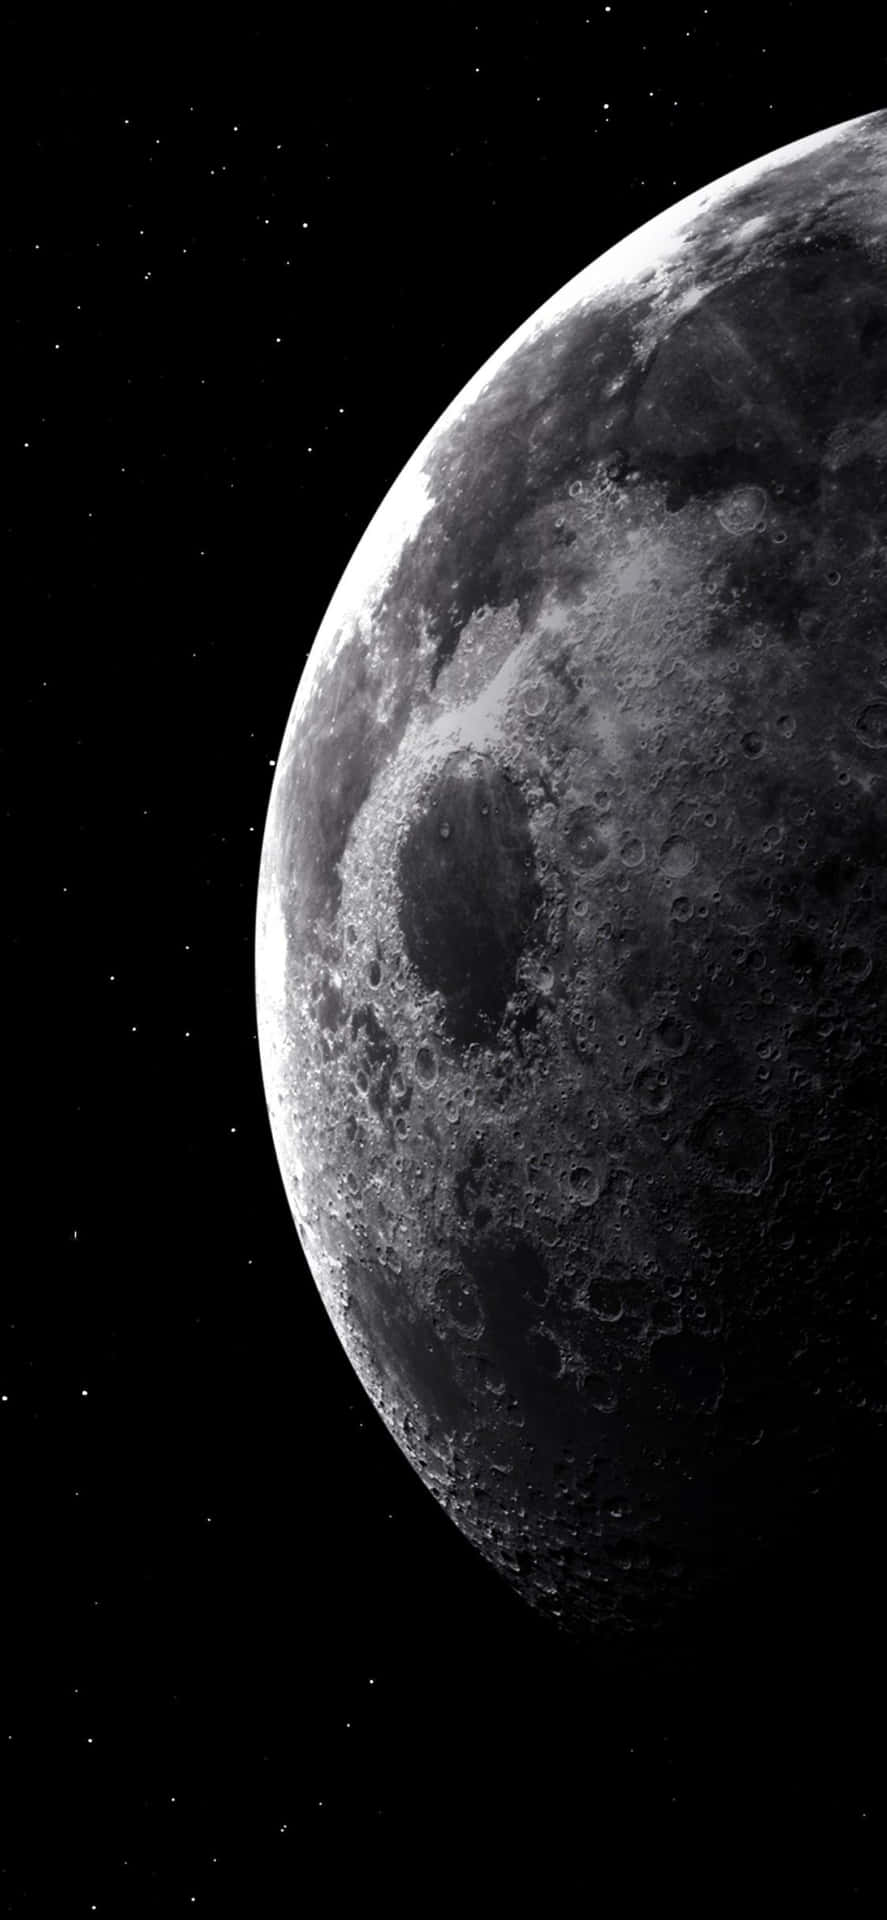 Den Moon Curve iPhone wallpaper skaber en smuk natlig himmel landskab. Wallpaper